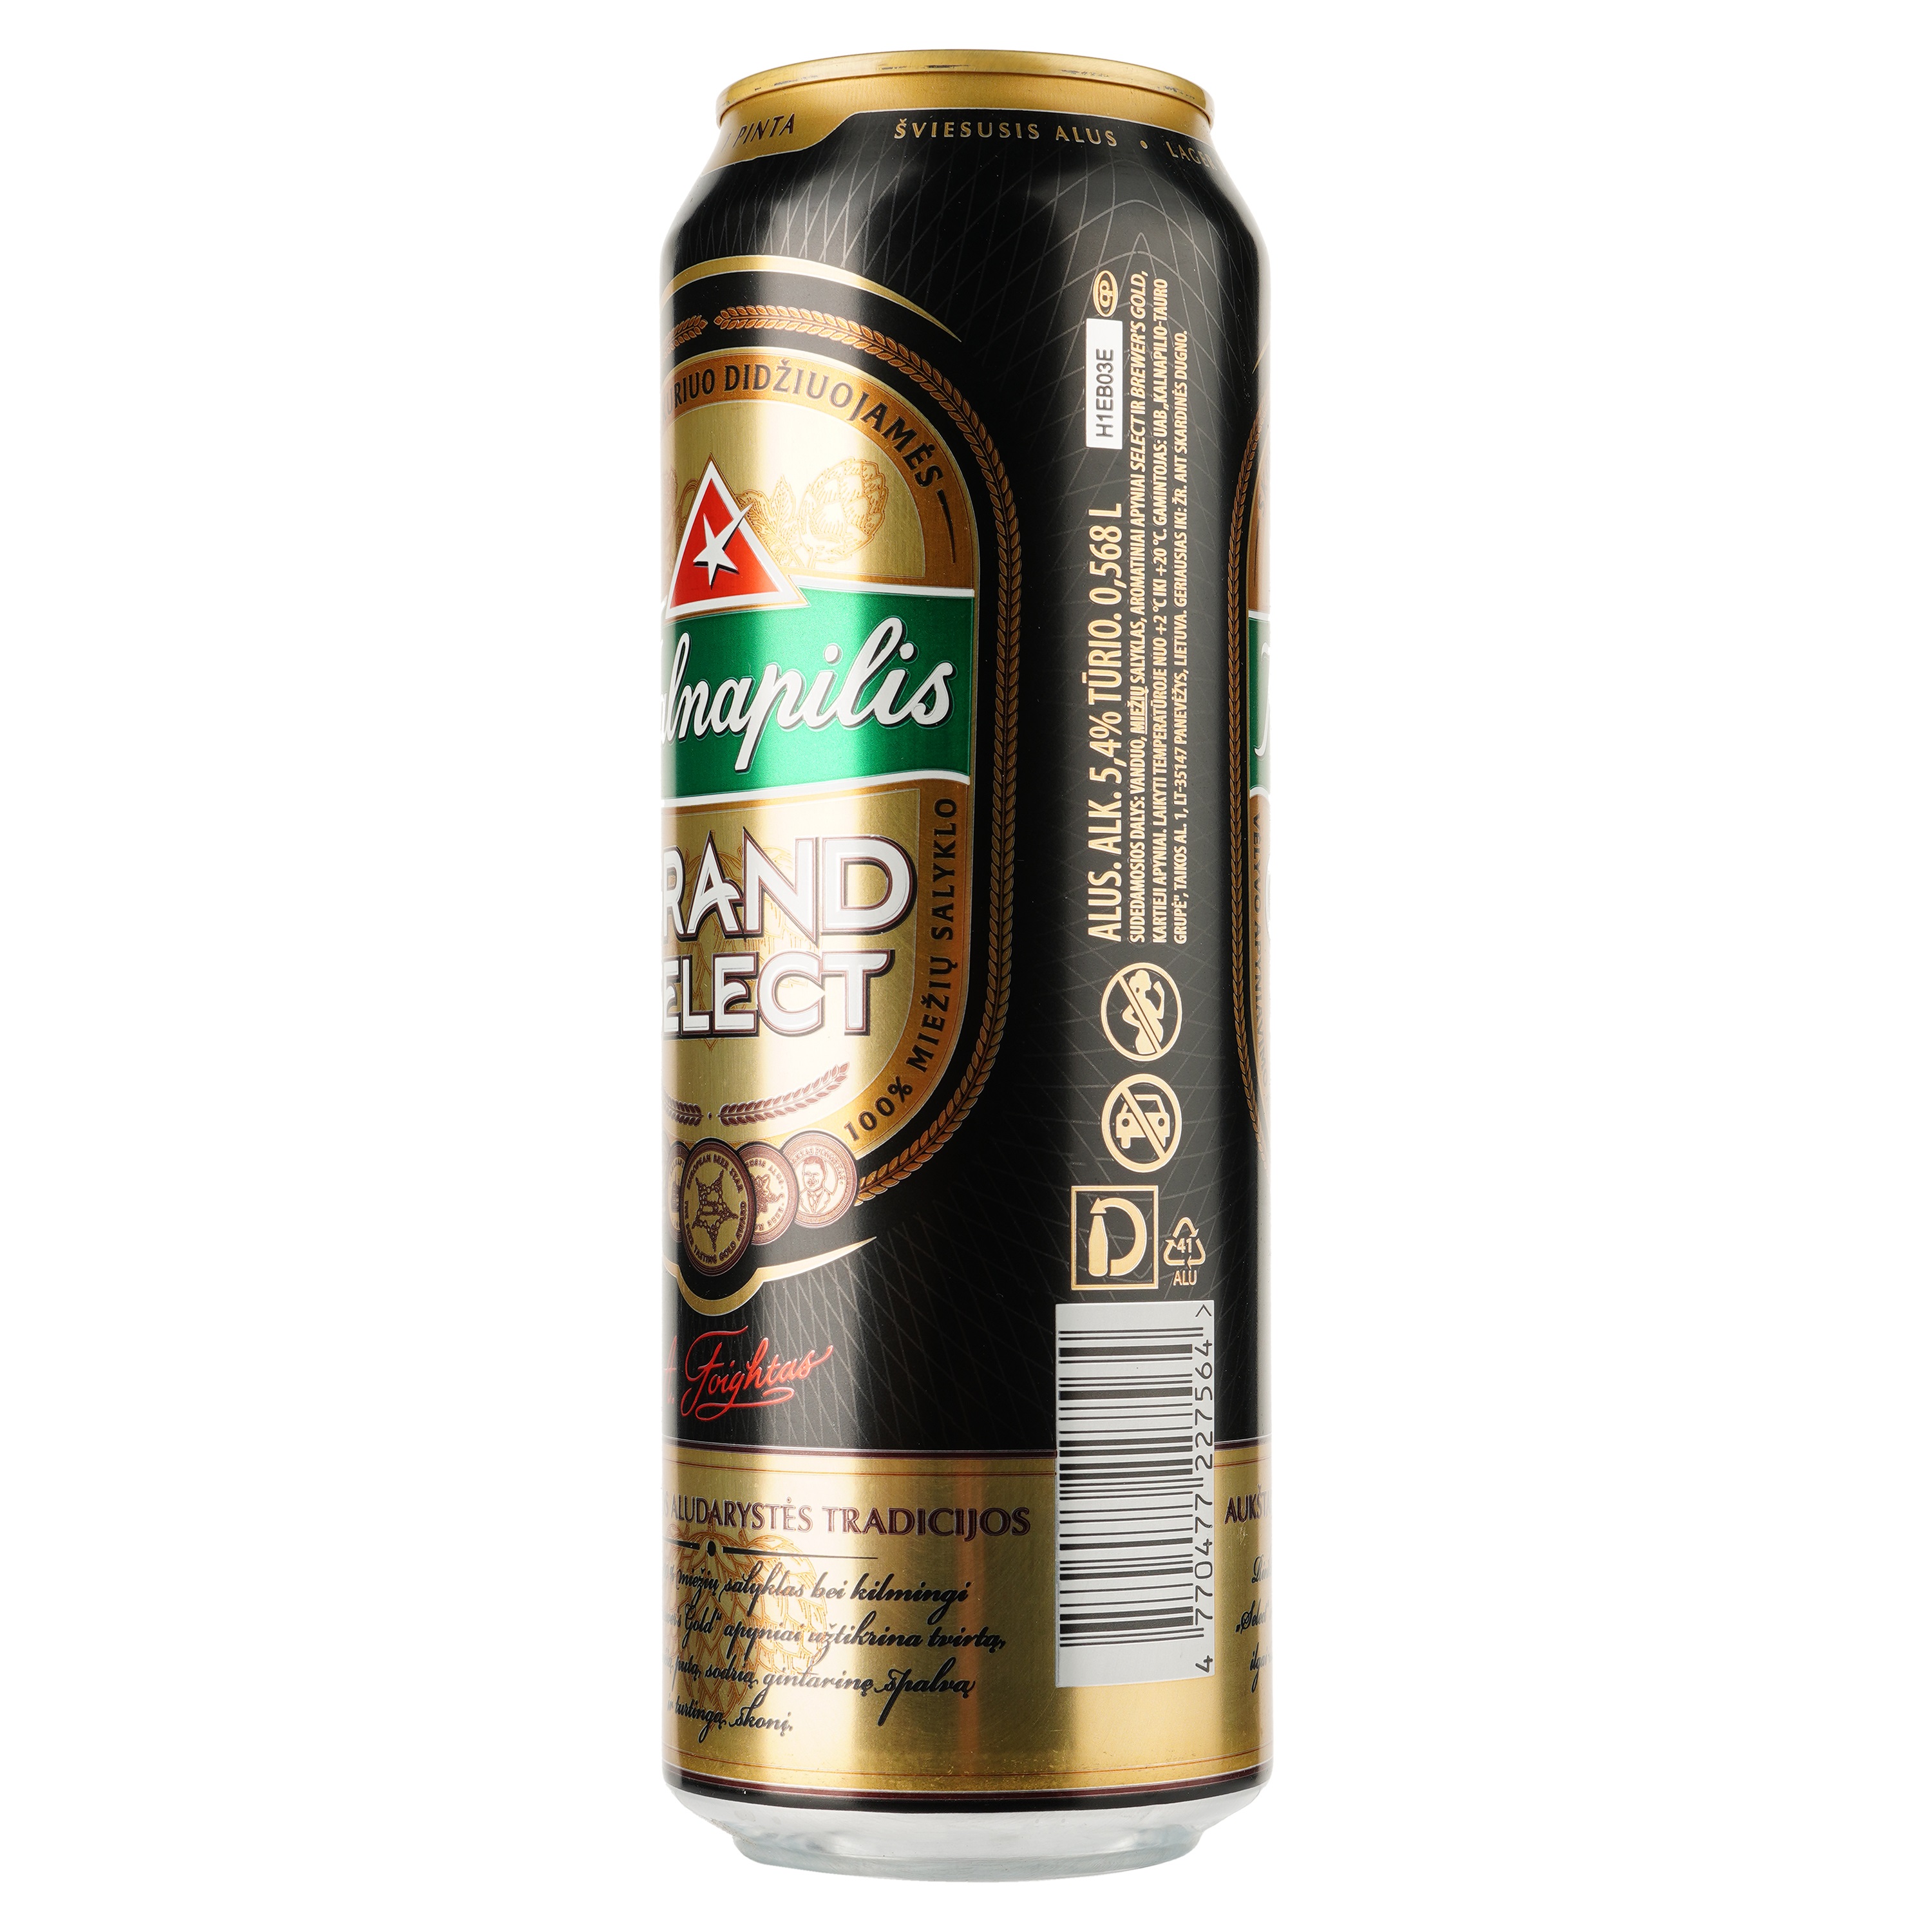 Пиво Kalnapilis Grand Select, светлое, фильтрованное, 5,4%, ж/б, 0,568 л - фото 2